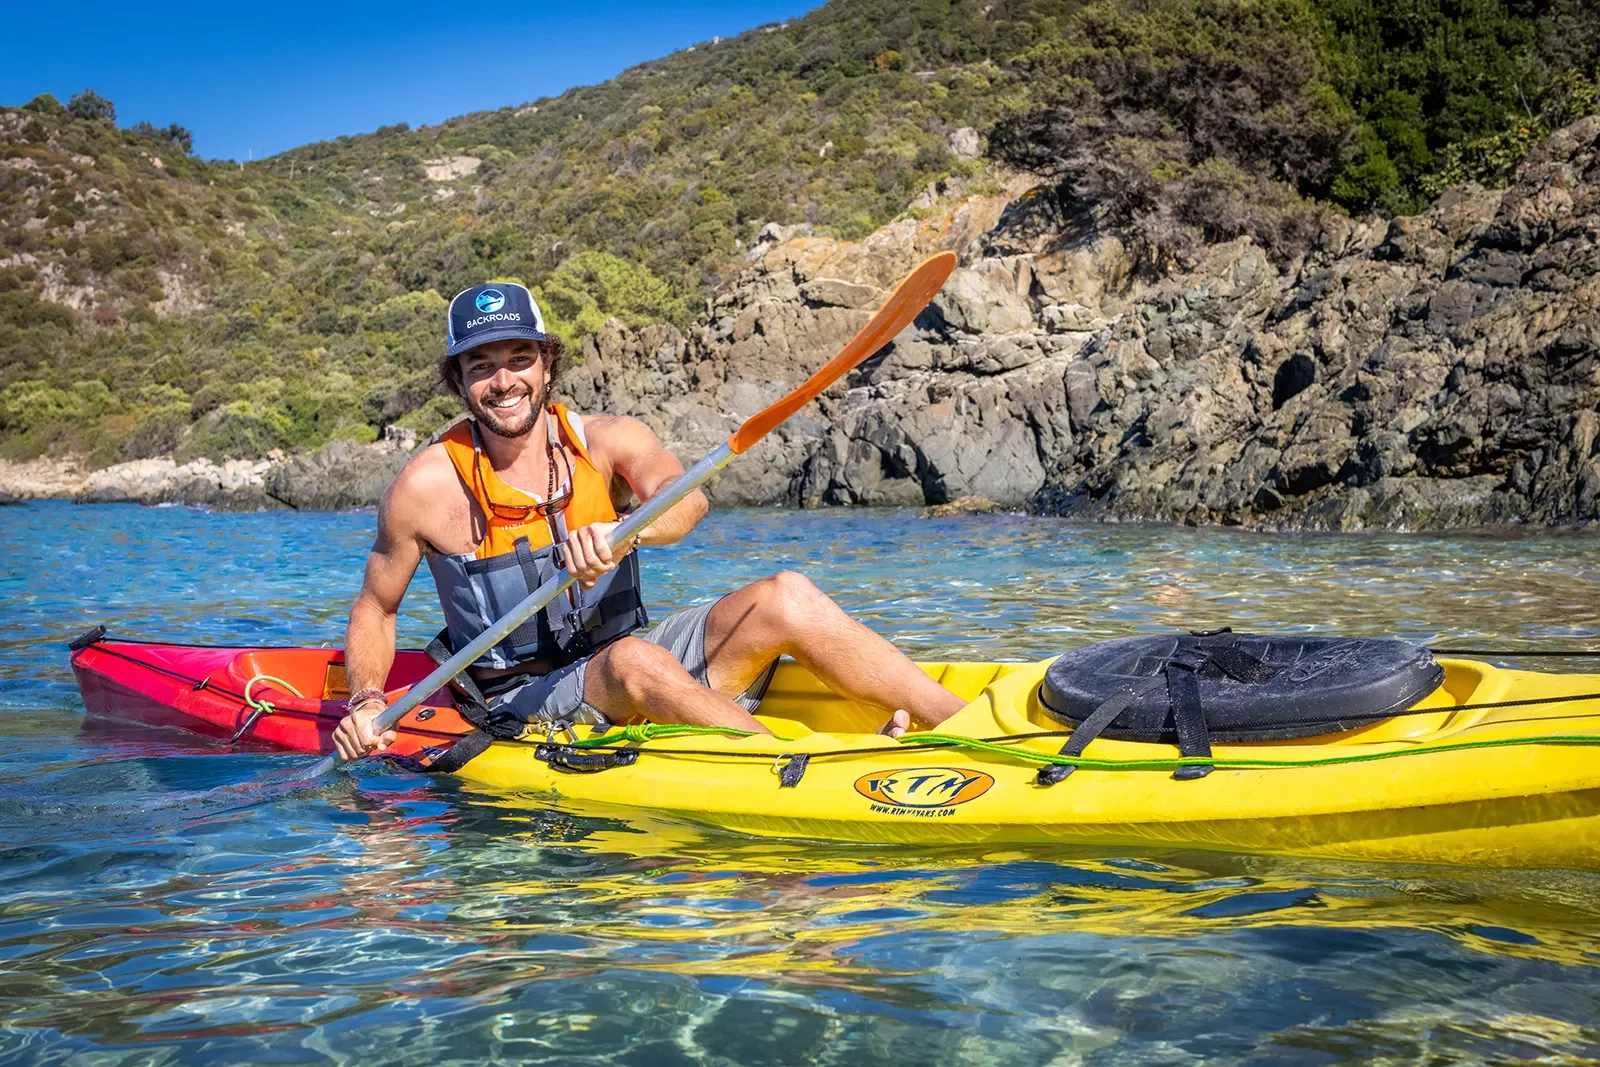 Man in a yellow kayak laughing